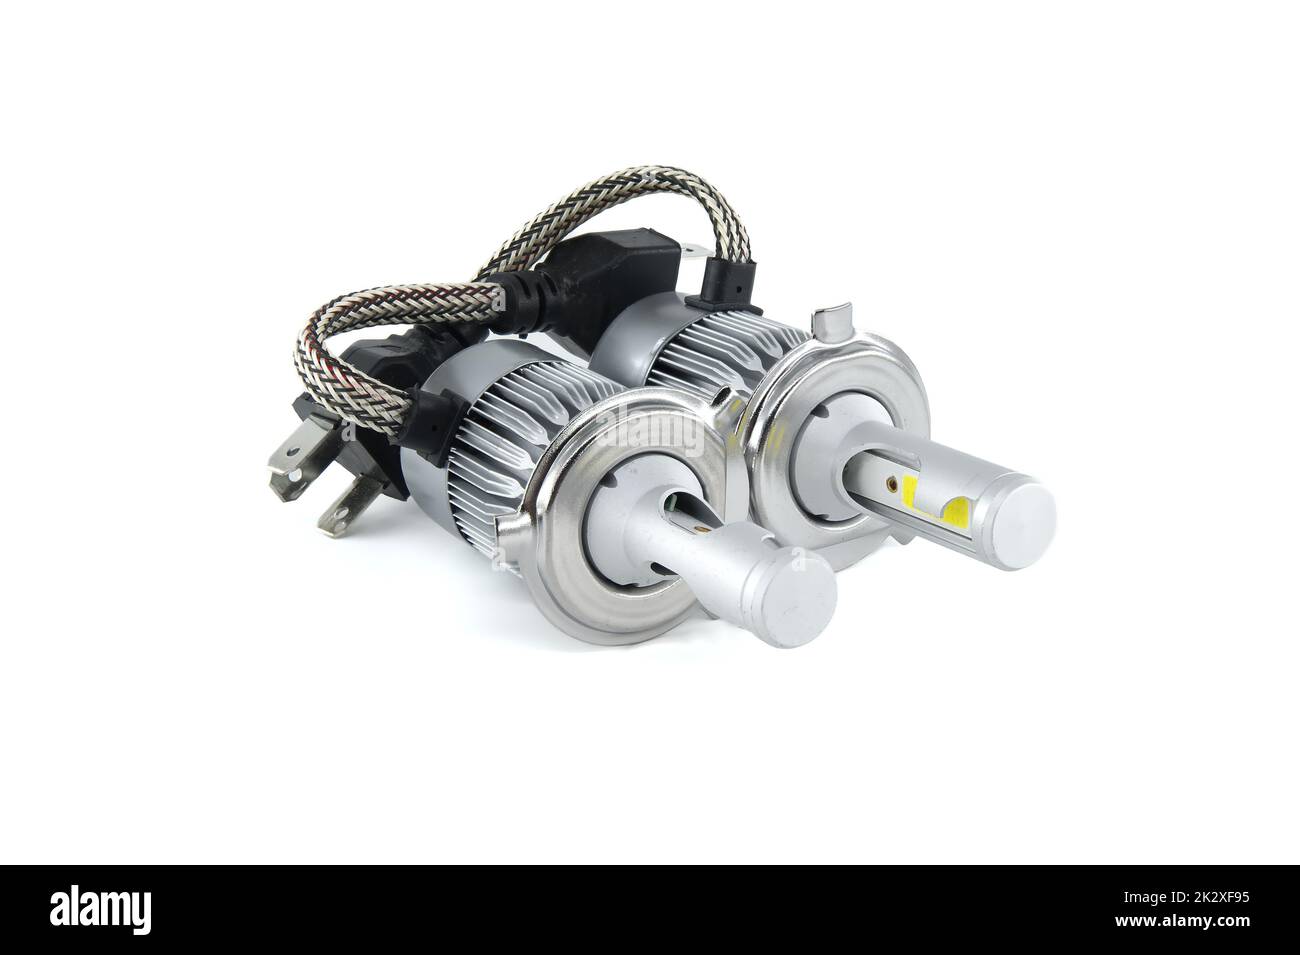  SHINYY Ampoules H7 LED Phare pour Voiture et Moto